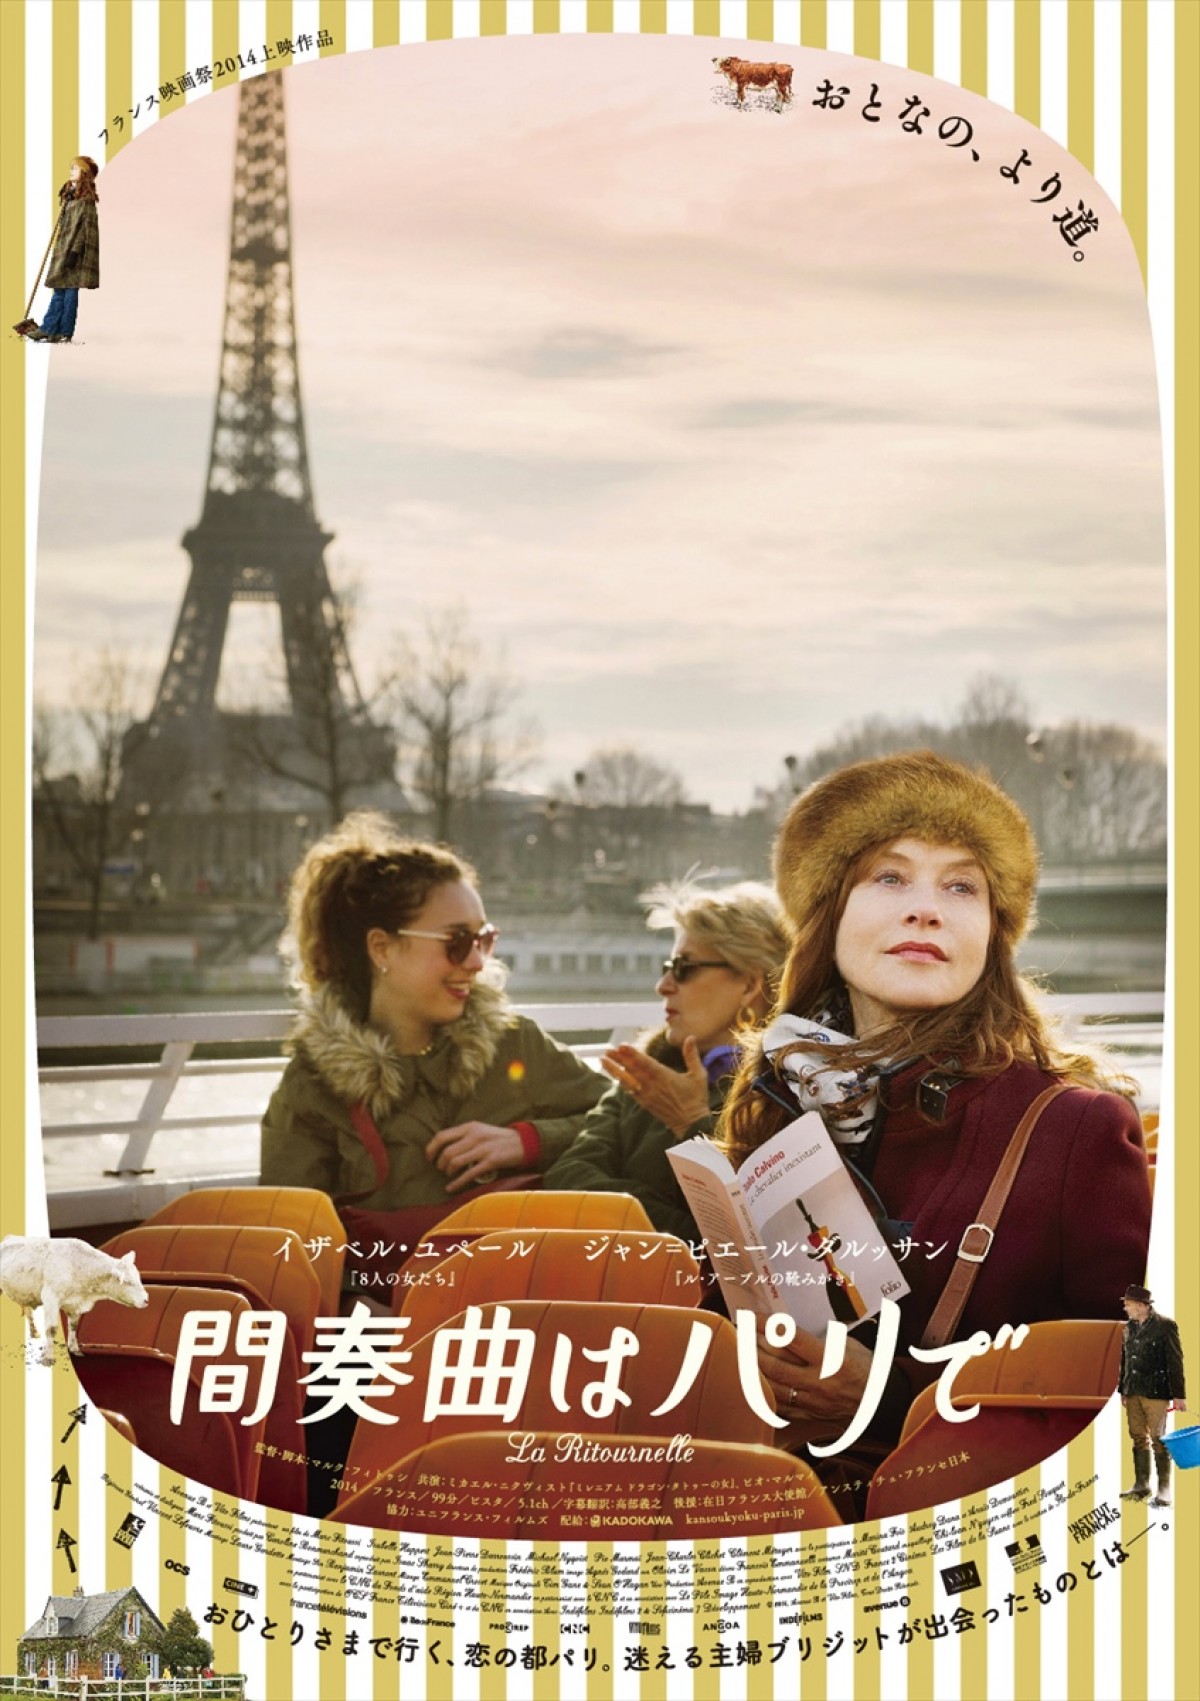 恵比寿ガーデンシネマ、2015年春復活！映画祭注目のラブストーリーがオープニングに